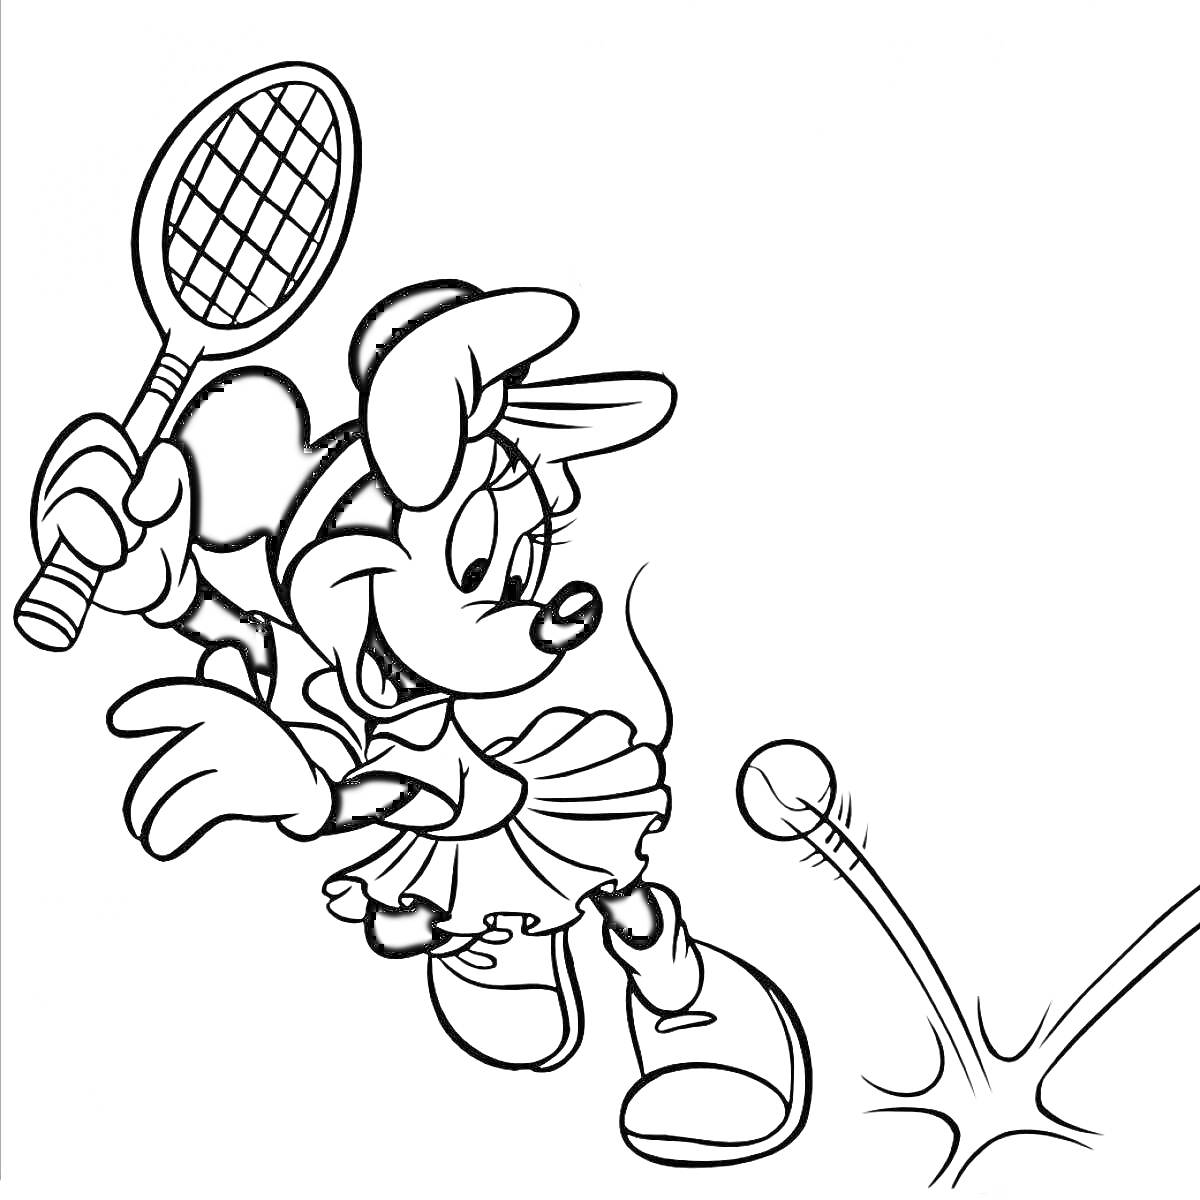 Раскраска Минни Маус играет в теннис с ракеткой и мячом.